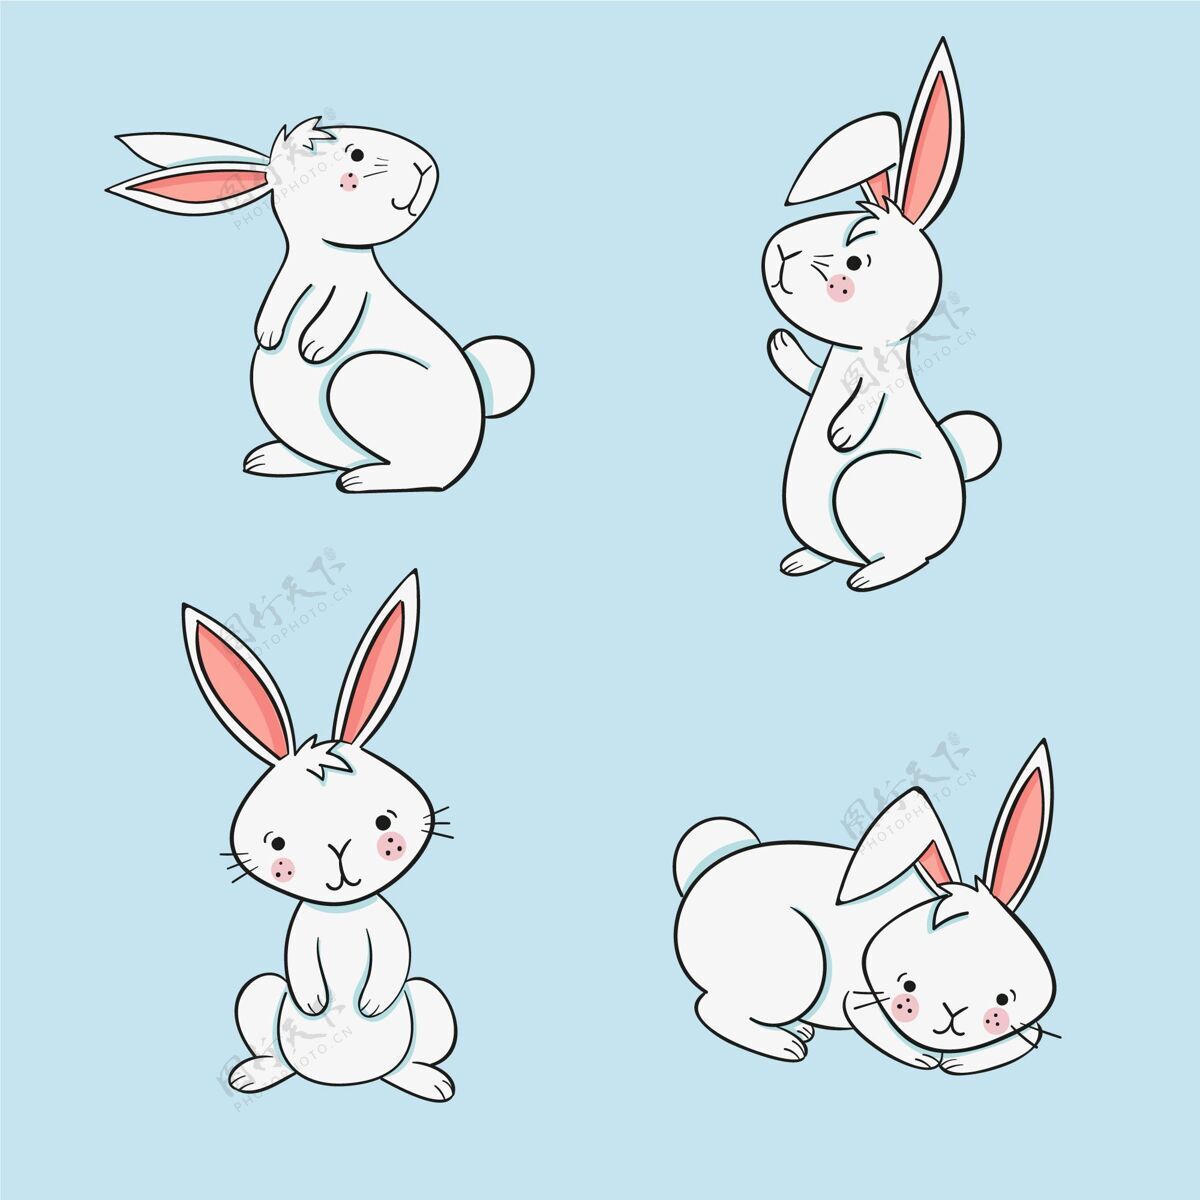 纪念手绘复活节兔子系列可爱帕斯卡兔子